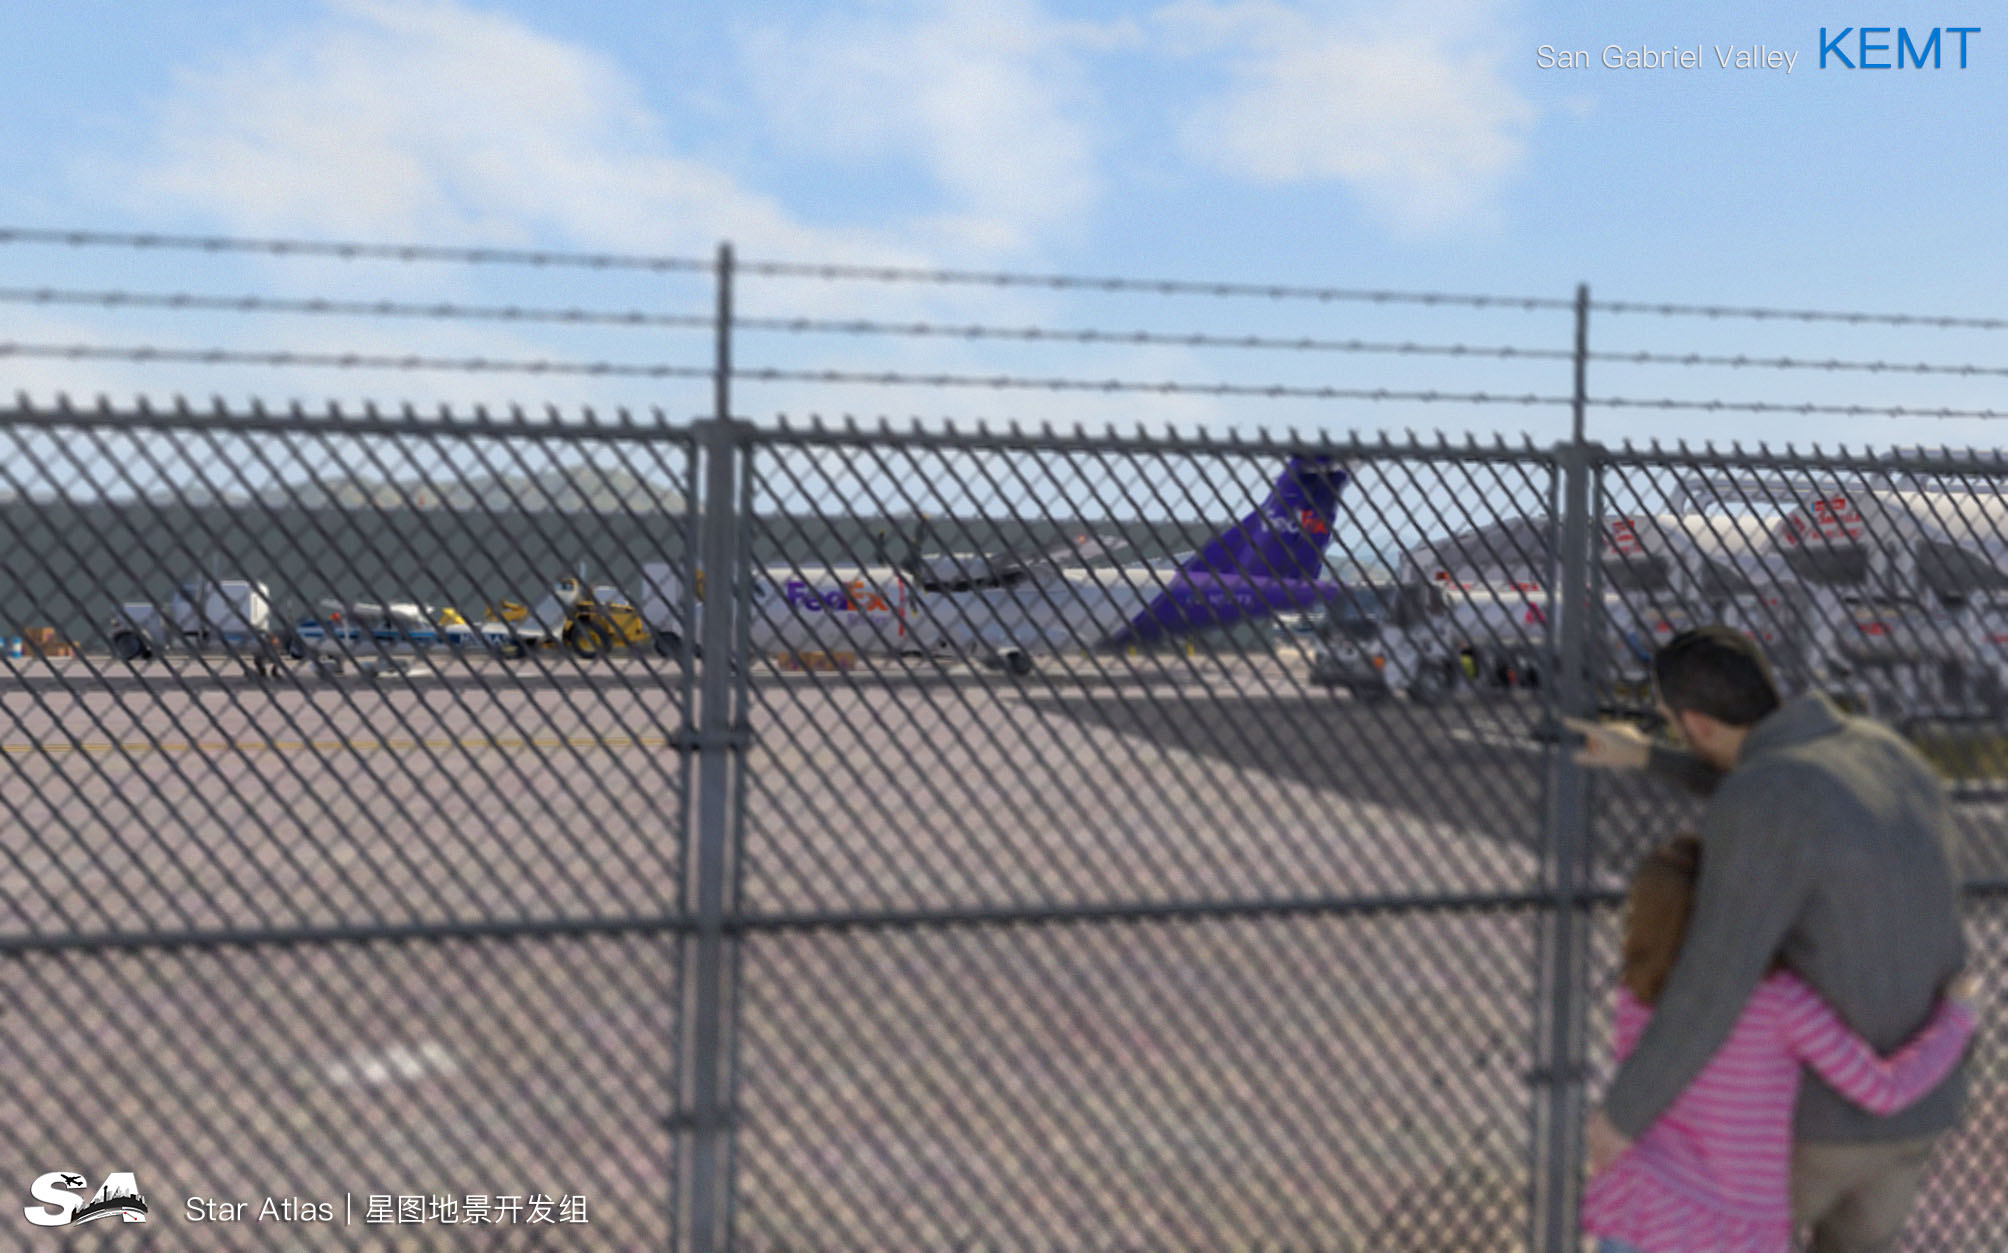 【X-Plane】KEMT-圣盖博谷机场 HD 1.0-521 